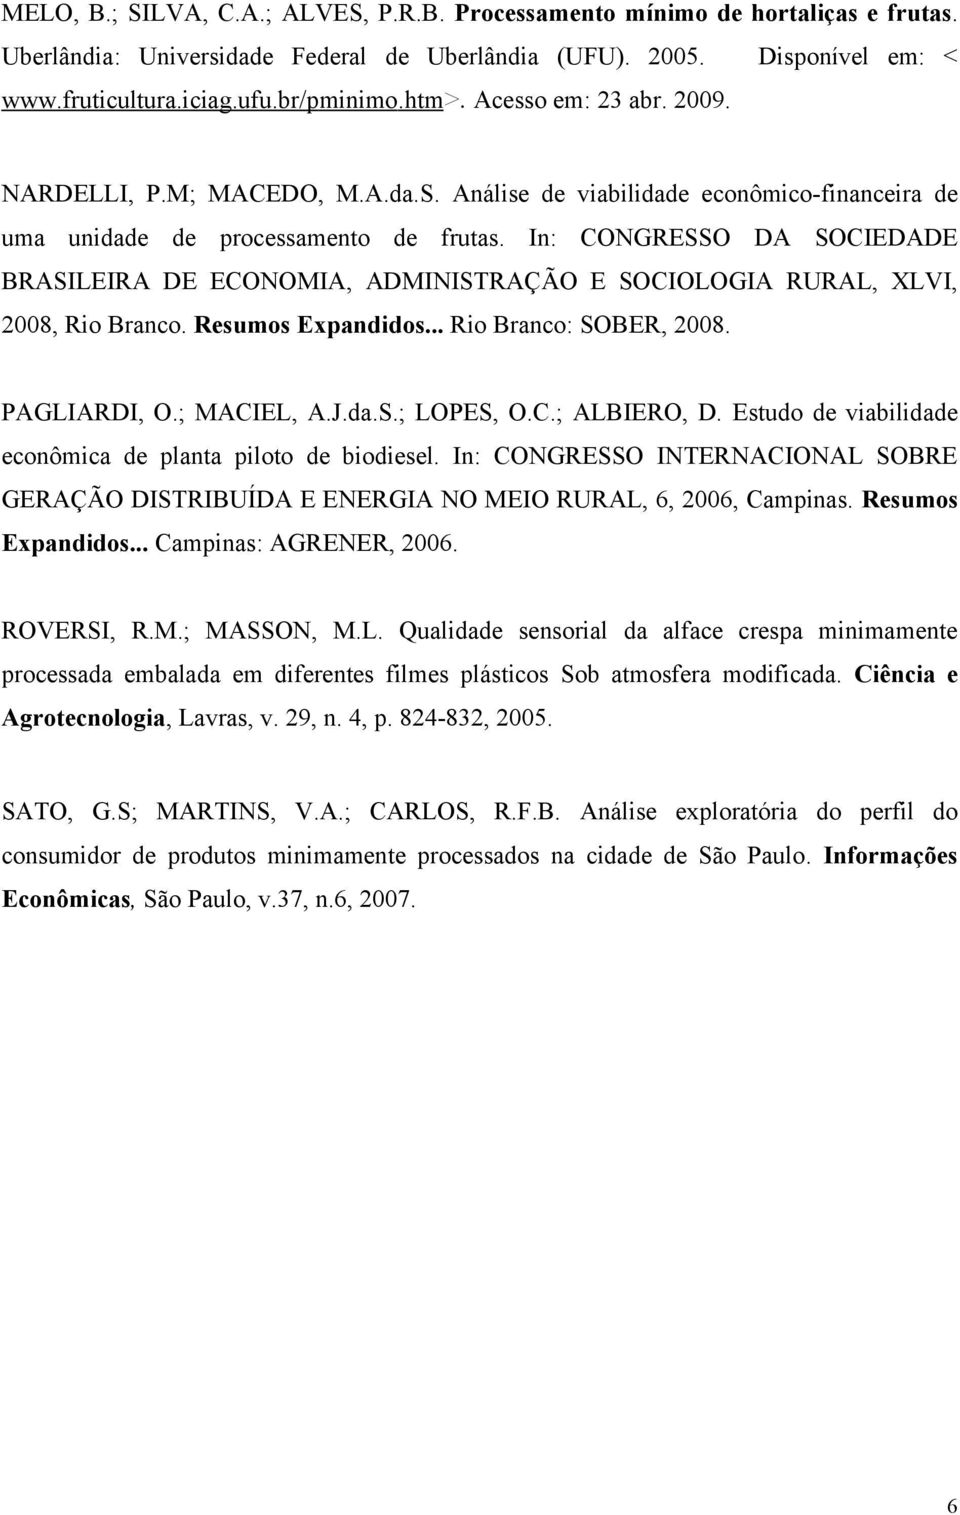 In: CONGRESSO DA SOCIEDADE BRASILEIRA DE ECONOMIA, ADMINISTRAÇÃO E SOCIOLOGIA RURAL, XLVI, 2008, Rio Branco. Resumos Expandidos... Rio Branco: SOBER, 2008. PAGLIARDI, O.; MACIEL, A.J.da.S.; LOPES, O.